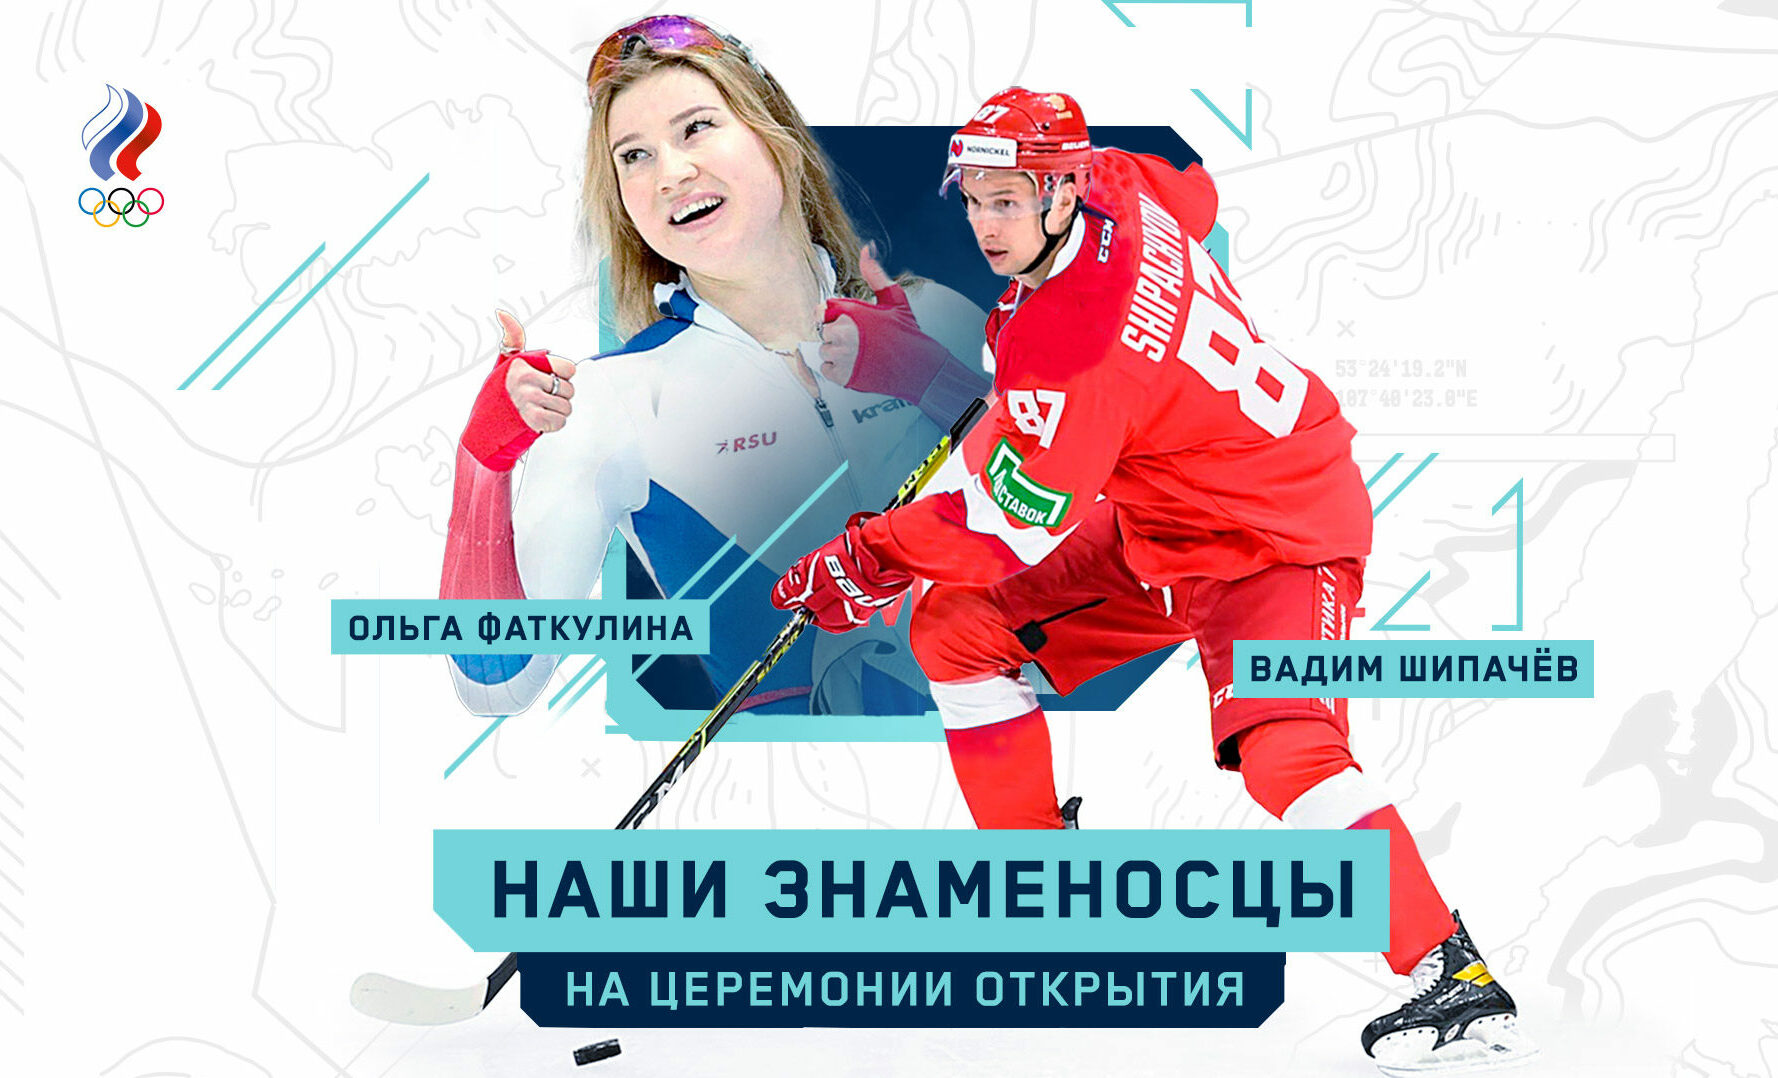 Напарником южноуральской конькобежки станет хоккеист Вадим Шипачев